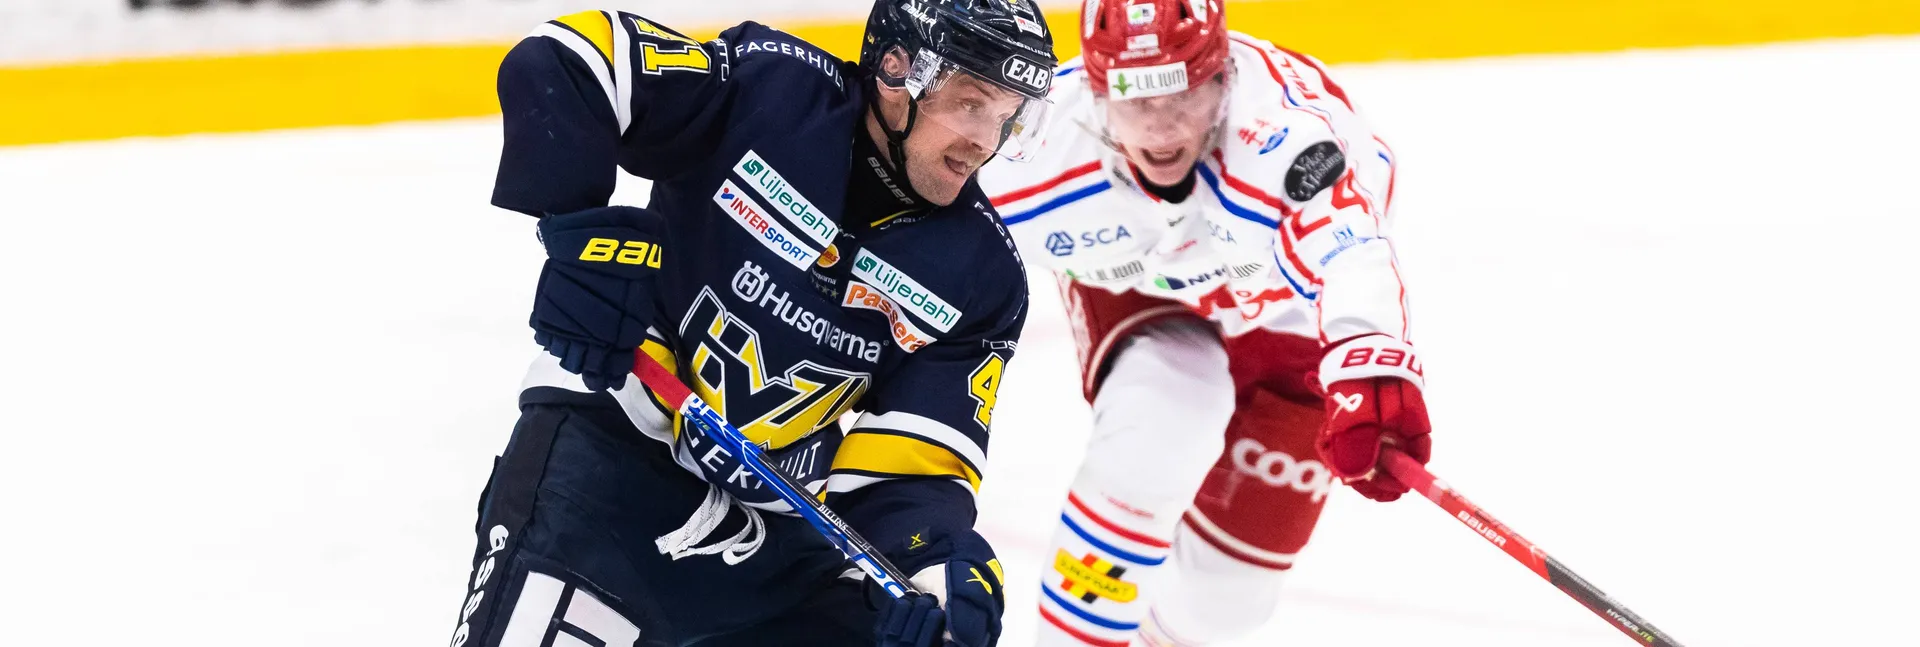 Ishockeymatch mellan HV71 och Timrå i SHL